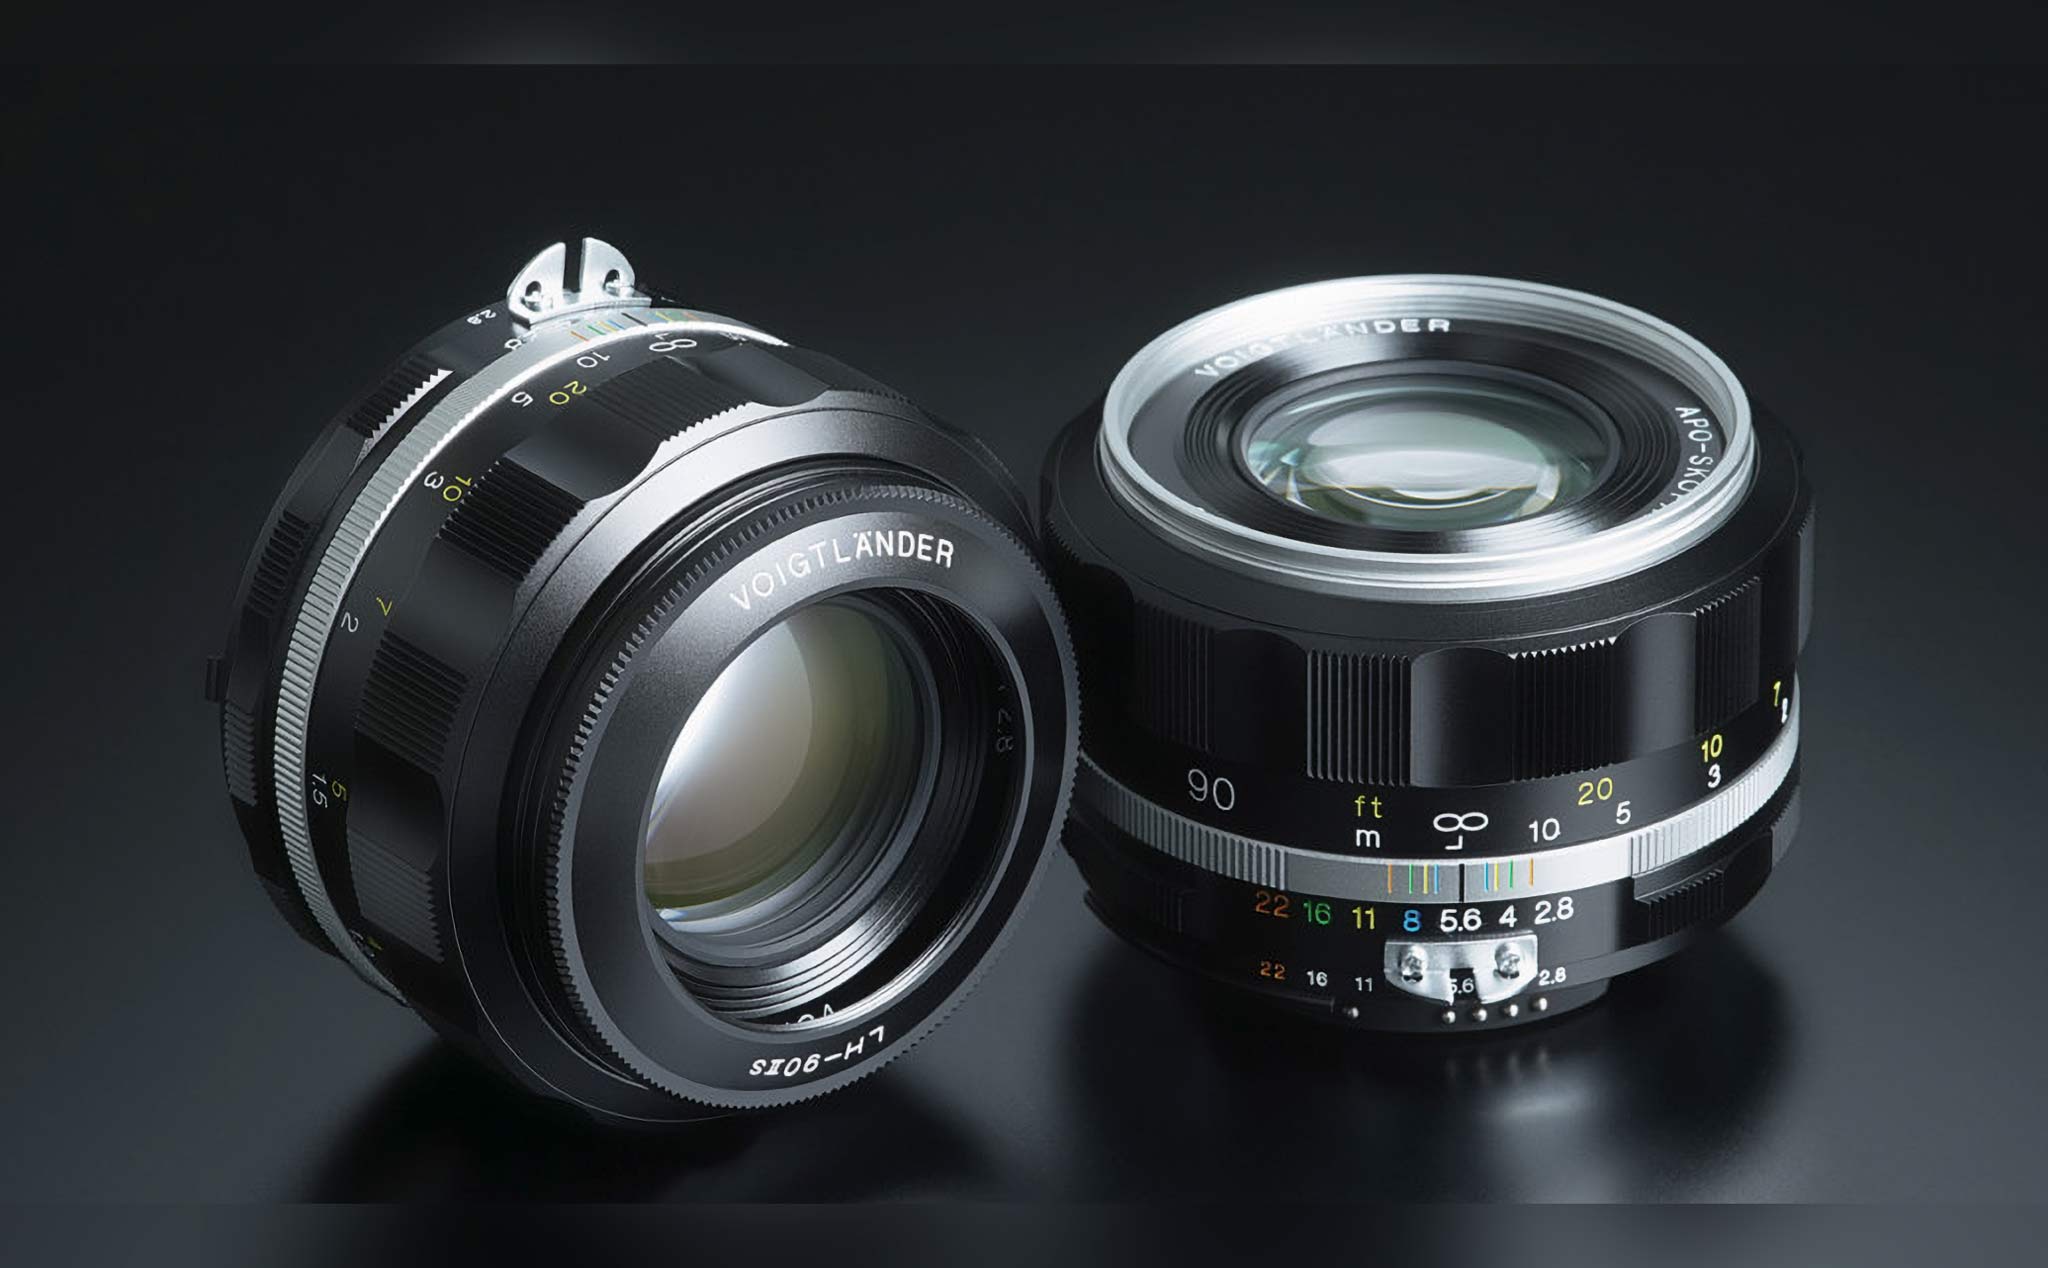 Cosina ra mắt ống kính Voigtlander APO-Skopar 90mm f/2.8 dành cho Nikon ngàm F